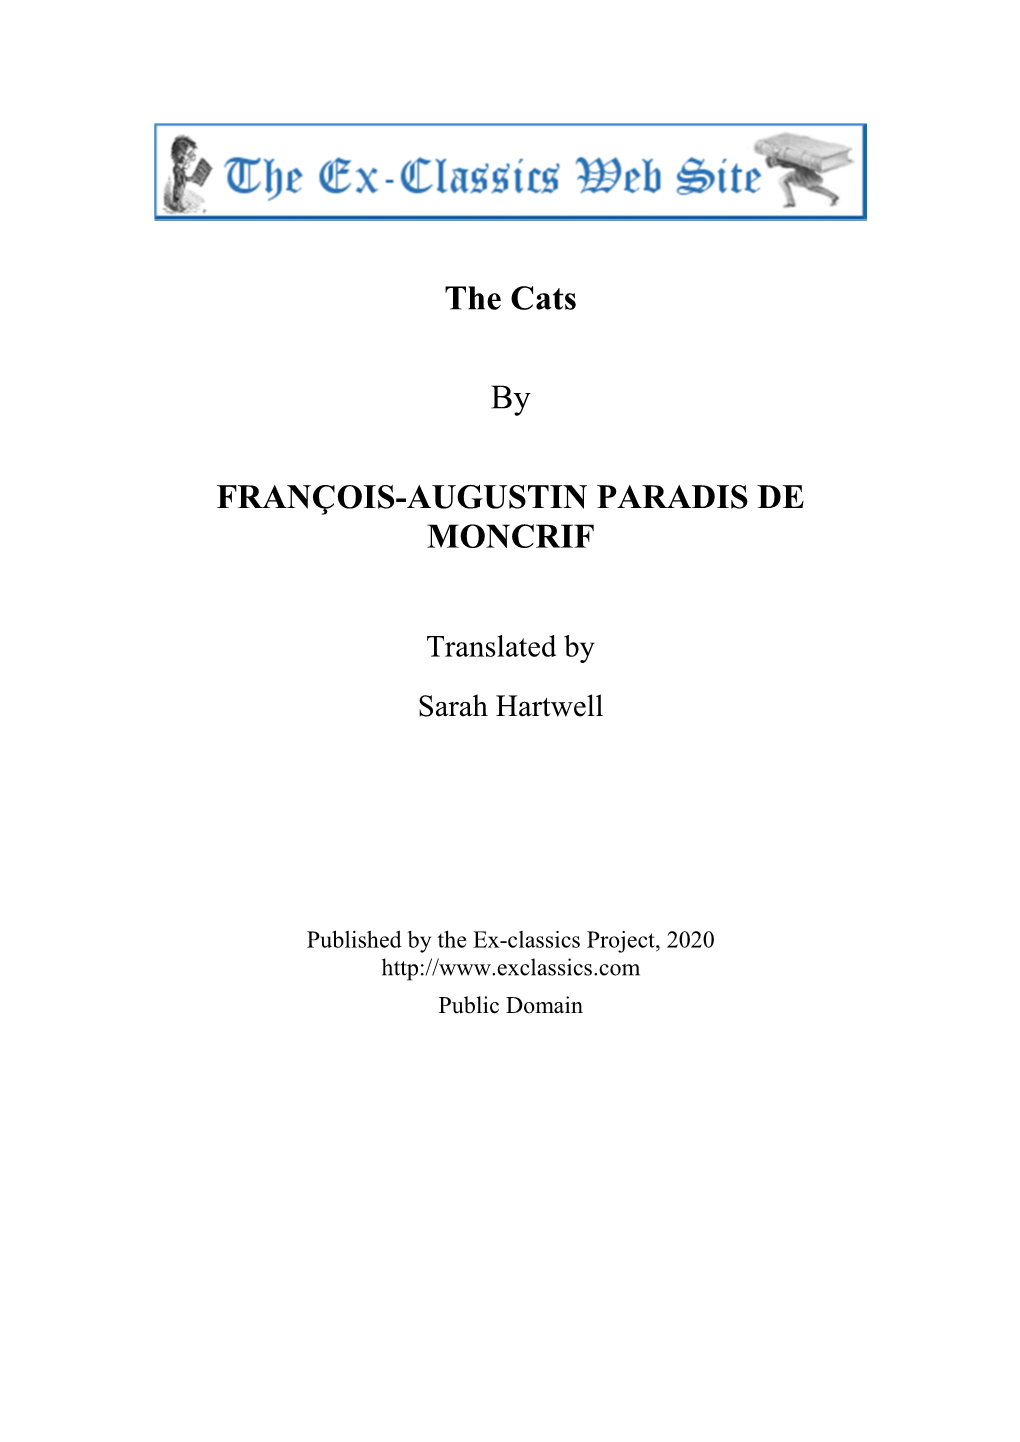 The Cats by FRANÇOIS-AUGUSTIN PARADIS DE MONCRIF